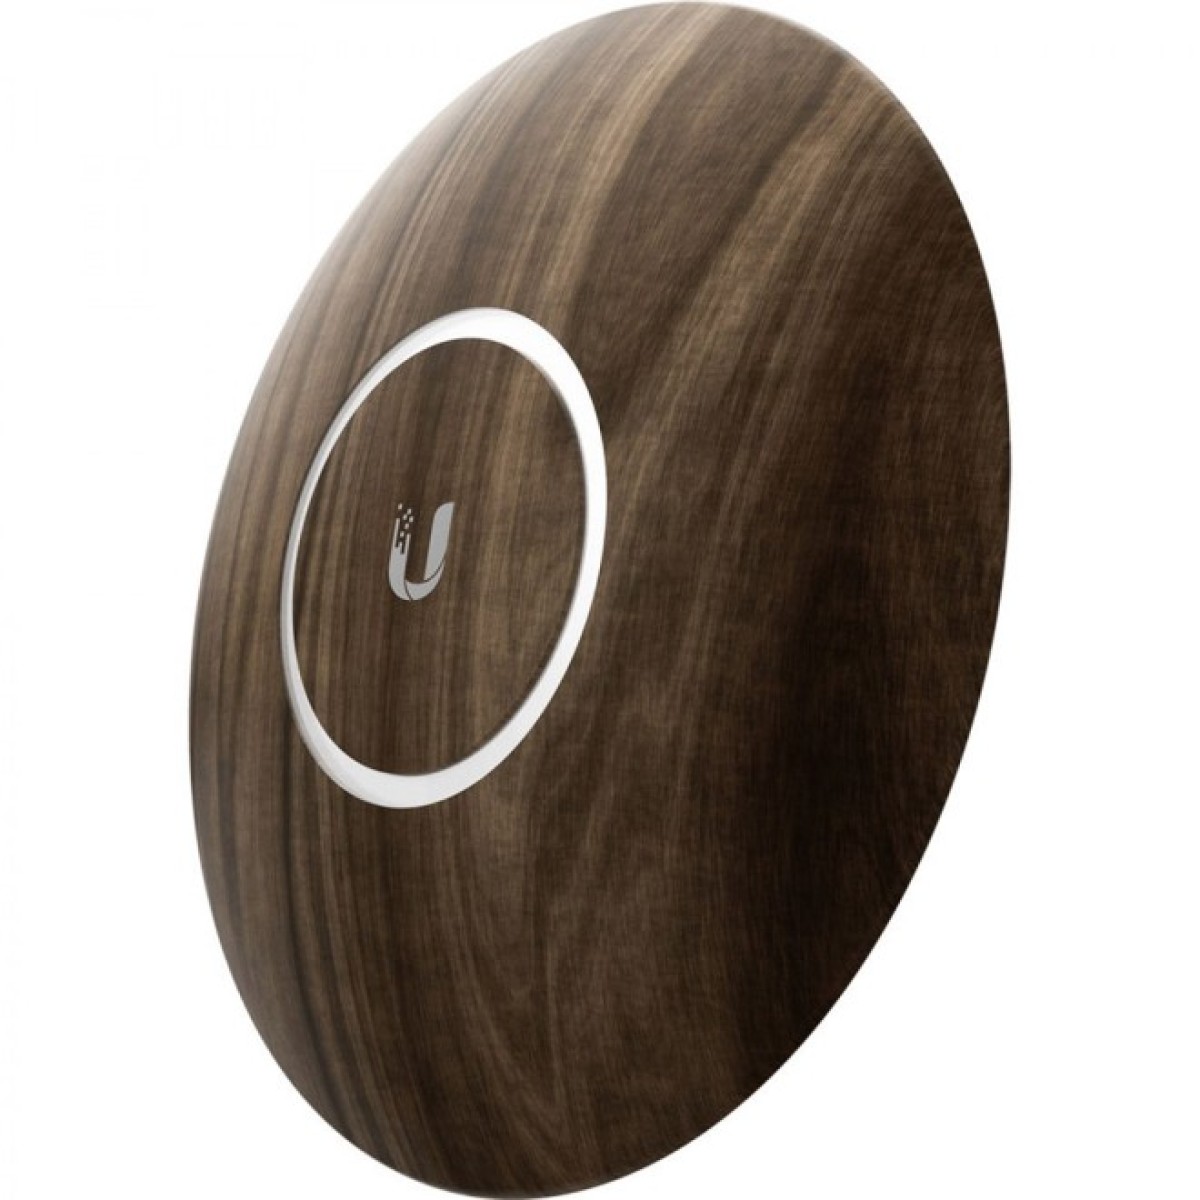 Декоративная накладка на точку доступа Ubiquiti UniFi AP nanoHD Wood Design (nHD-cover-Wood) 98_98.jpg - фото 3